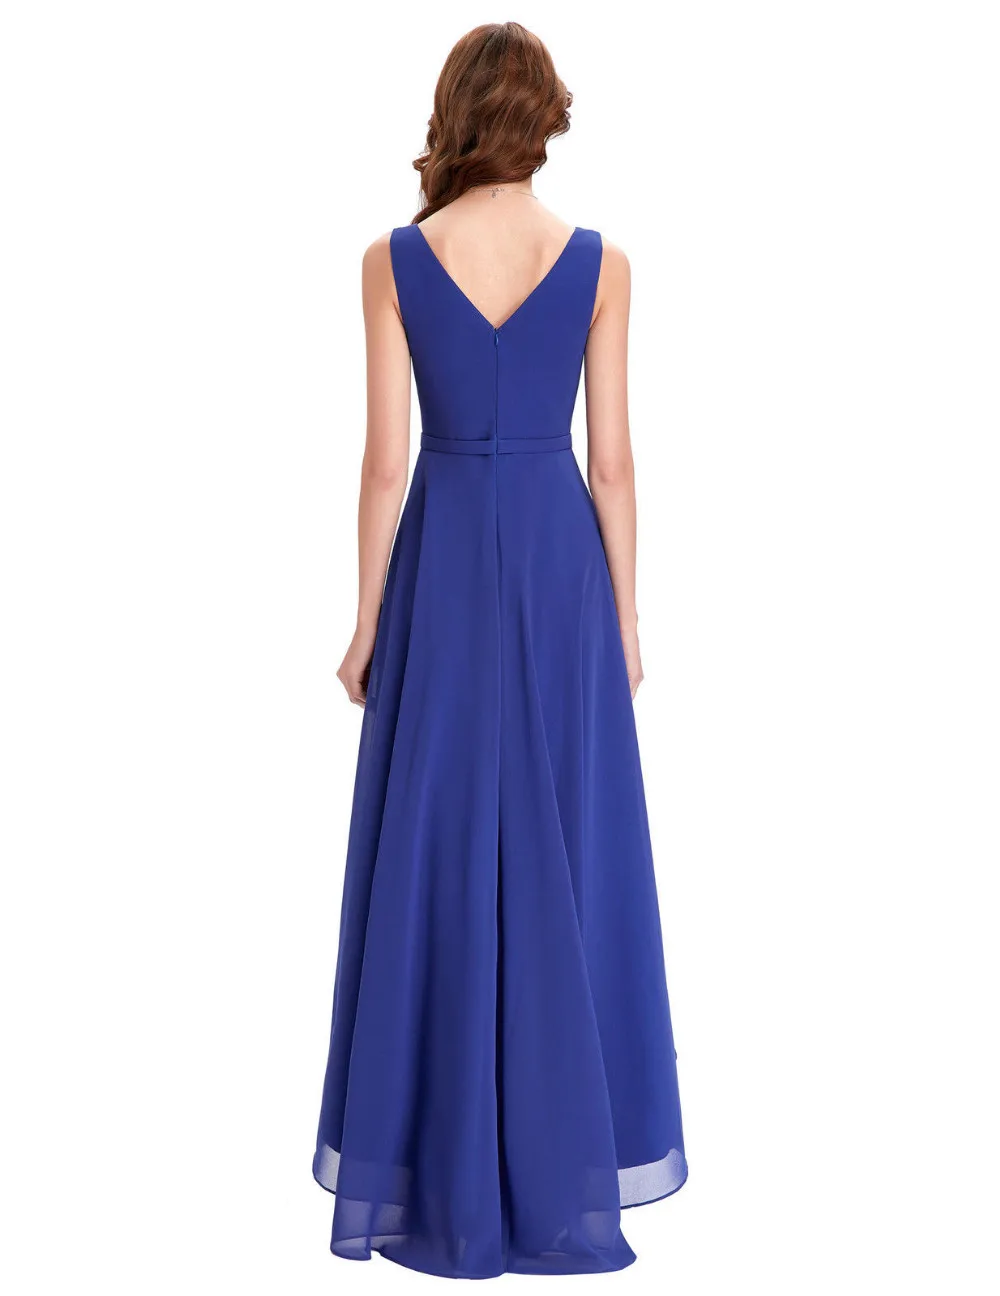 High Low Royal Blue Chiffon Short Front Long Back Bridesmaid Dress ...